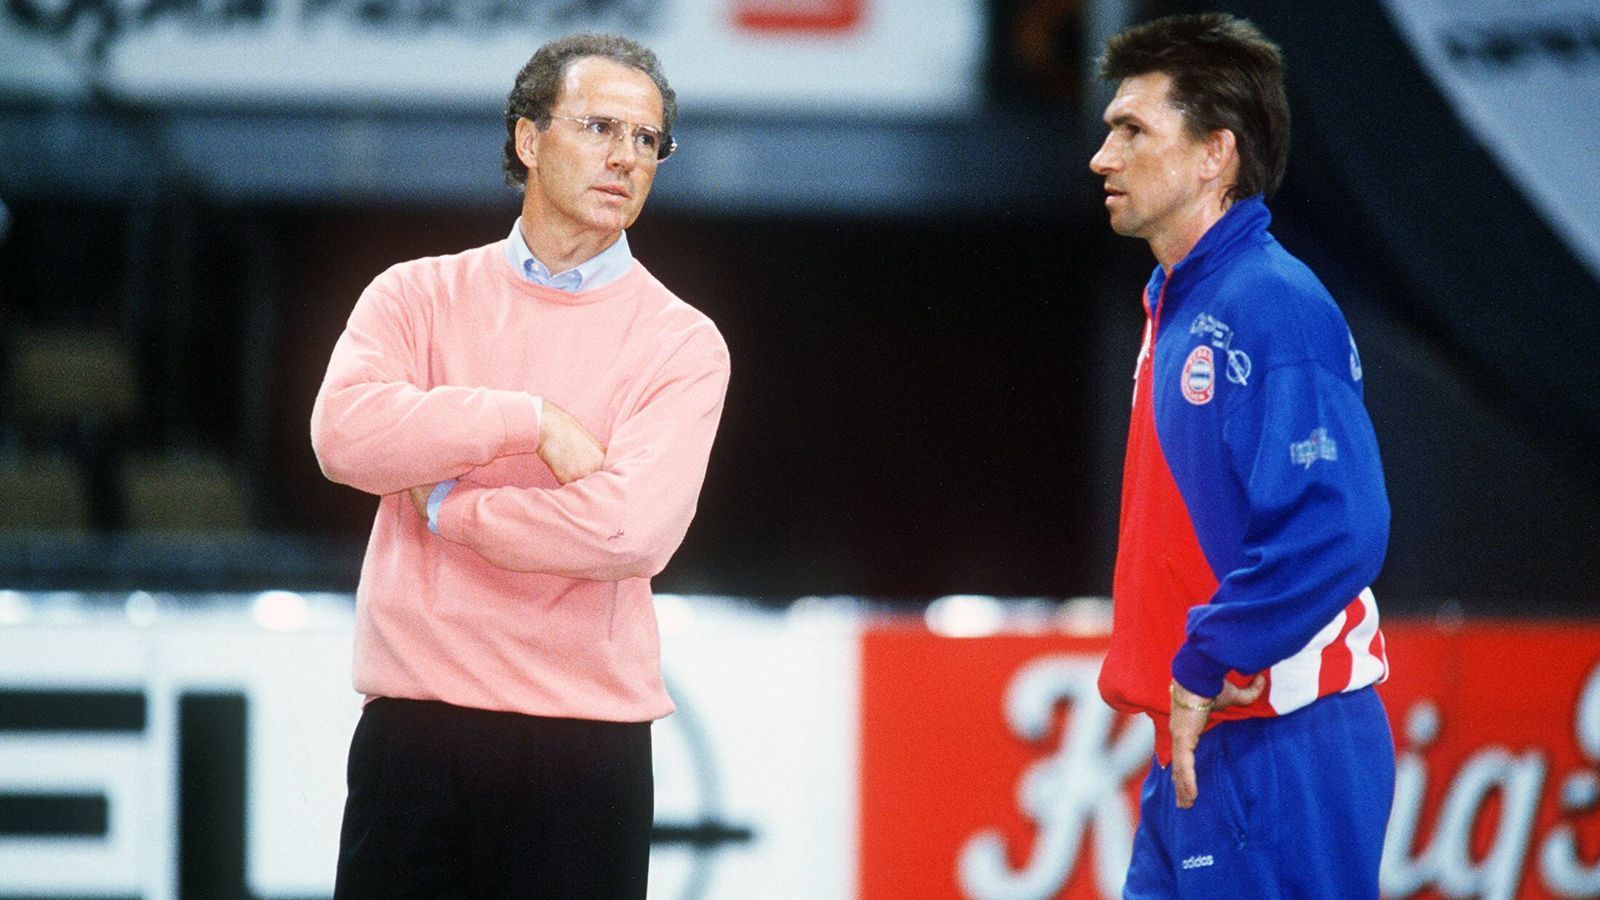 
                <strong>FC Bayern München (1996)</strong><br>
                Als Ersatz für Franz Beckenbauer (li.) lässt Klaus Augenthaler (re.) in der Bayern-Partie gegen Fortuna Düsseldorf viermal auswechseln - damals noch nicht erlaubt.
              